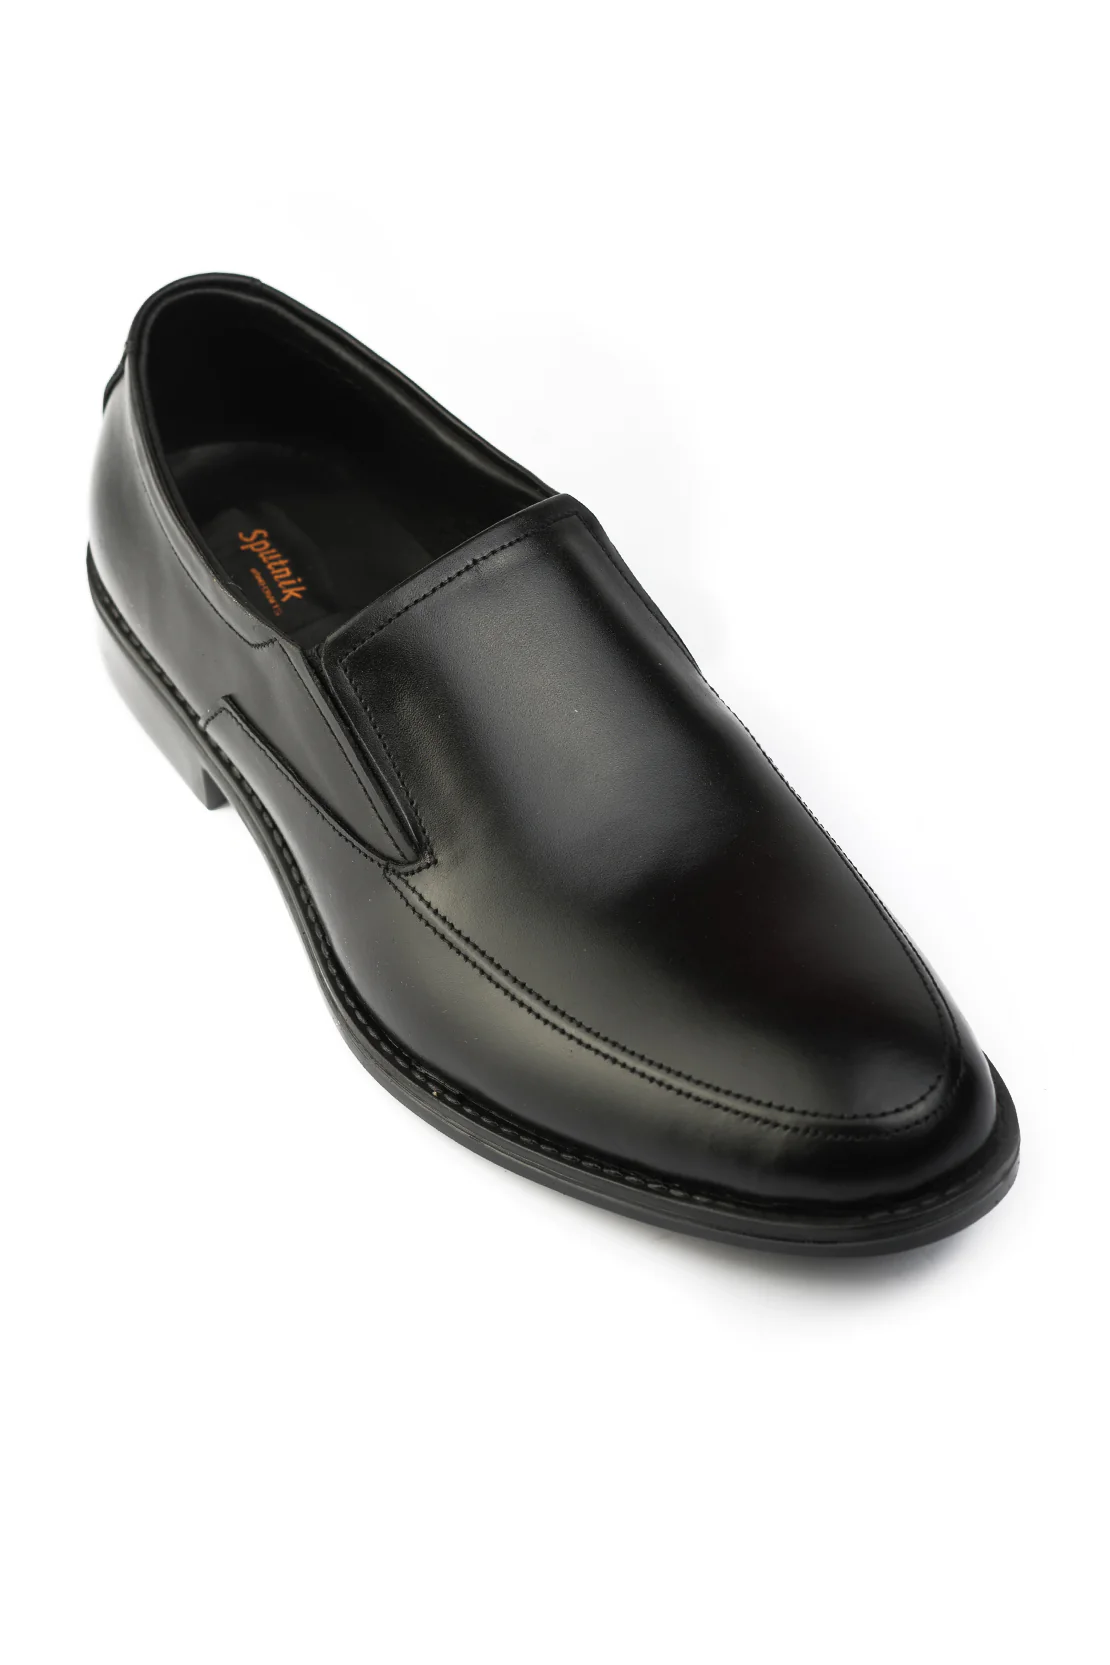 Black-Formal-Shoes-J01421-002